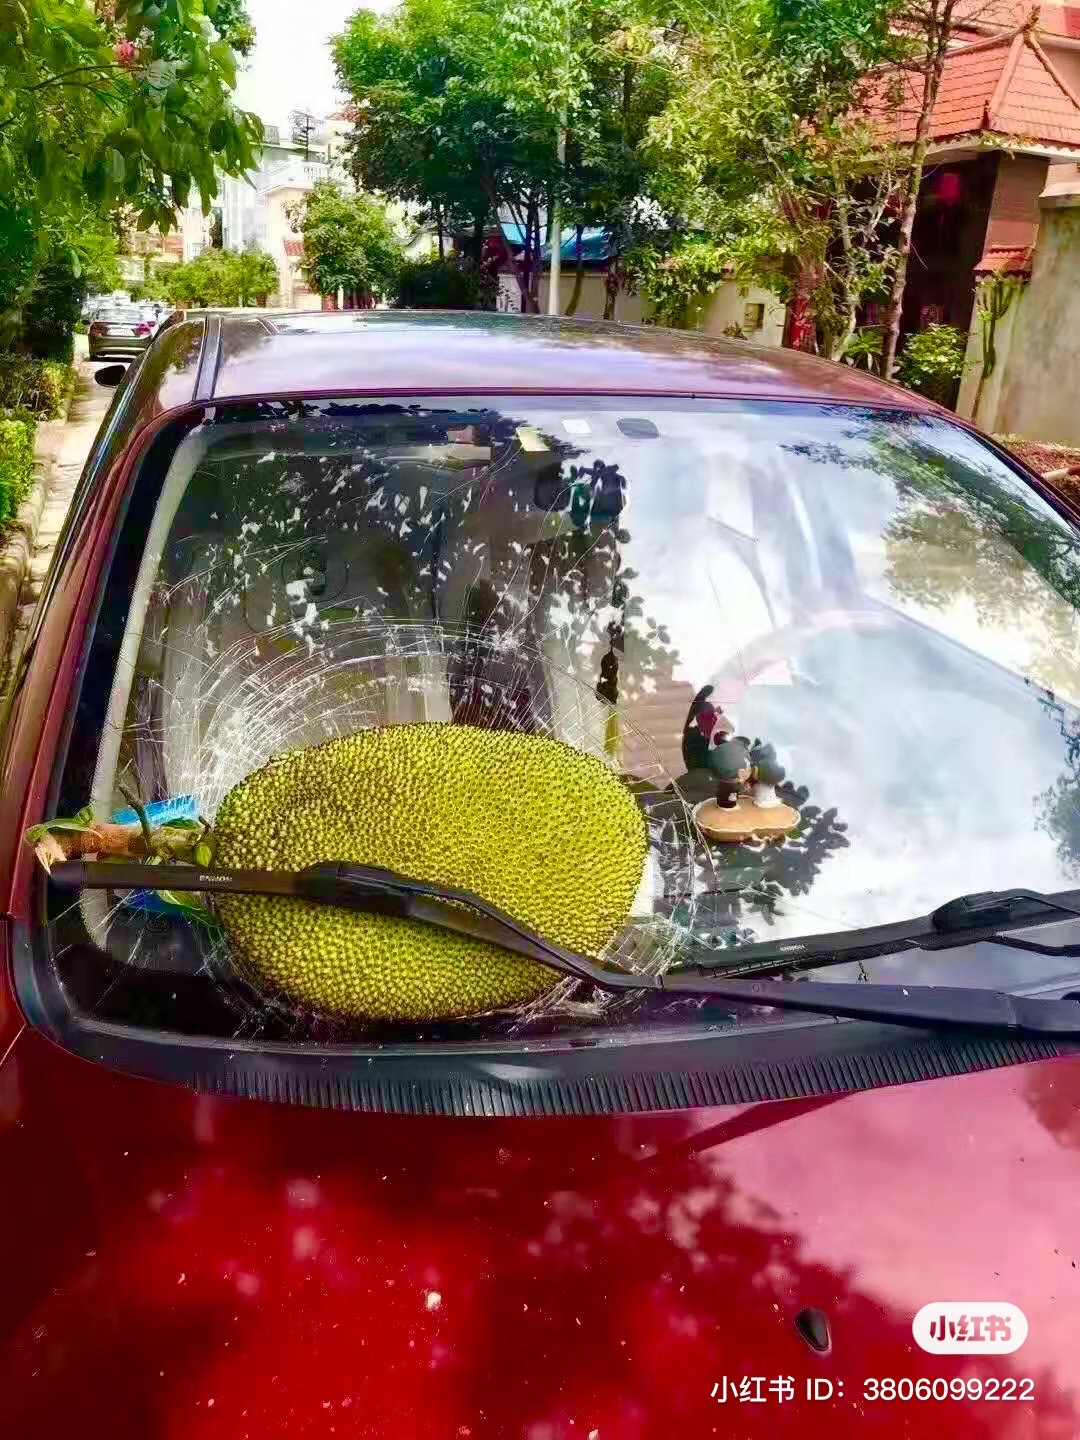 Giant cempedak falls on car's windscreen, car owner seeks help online 02